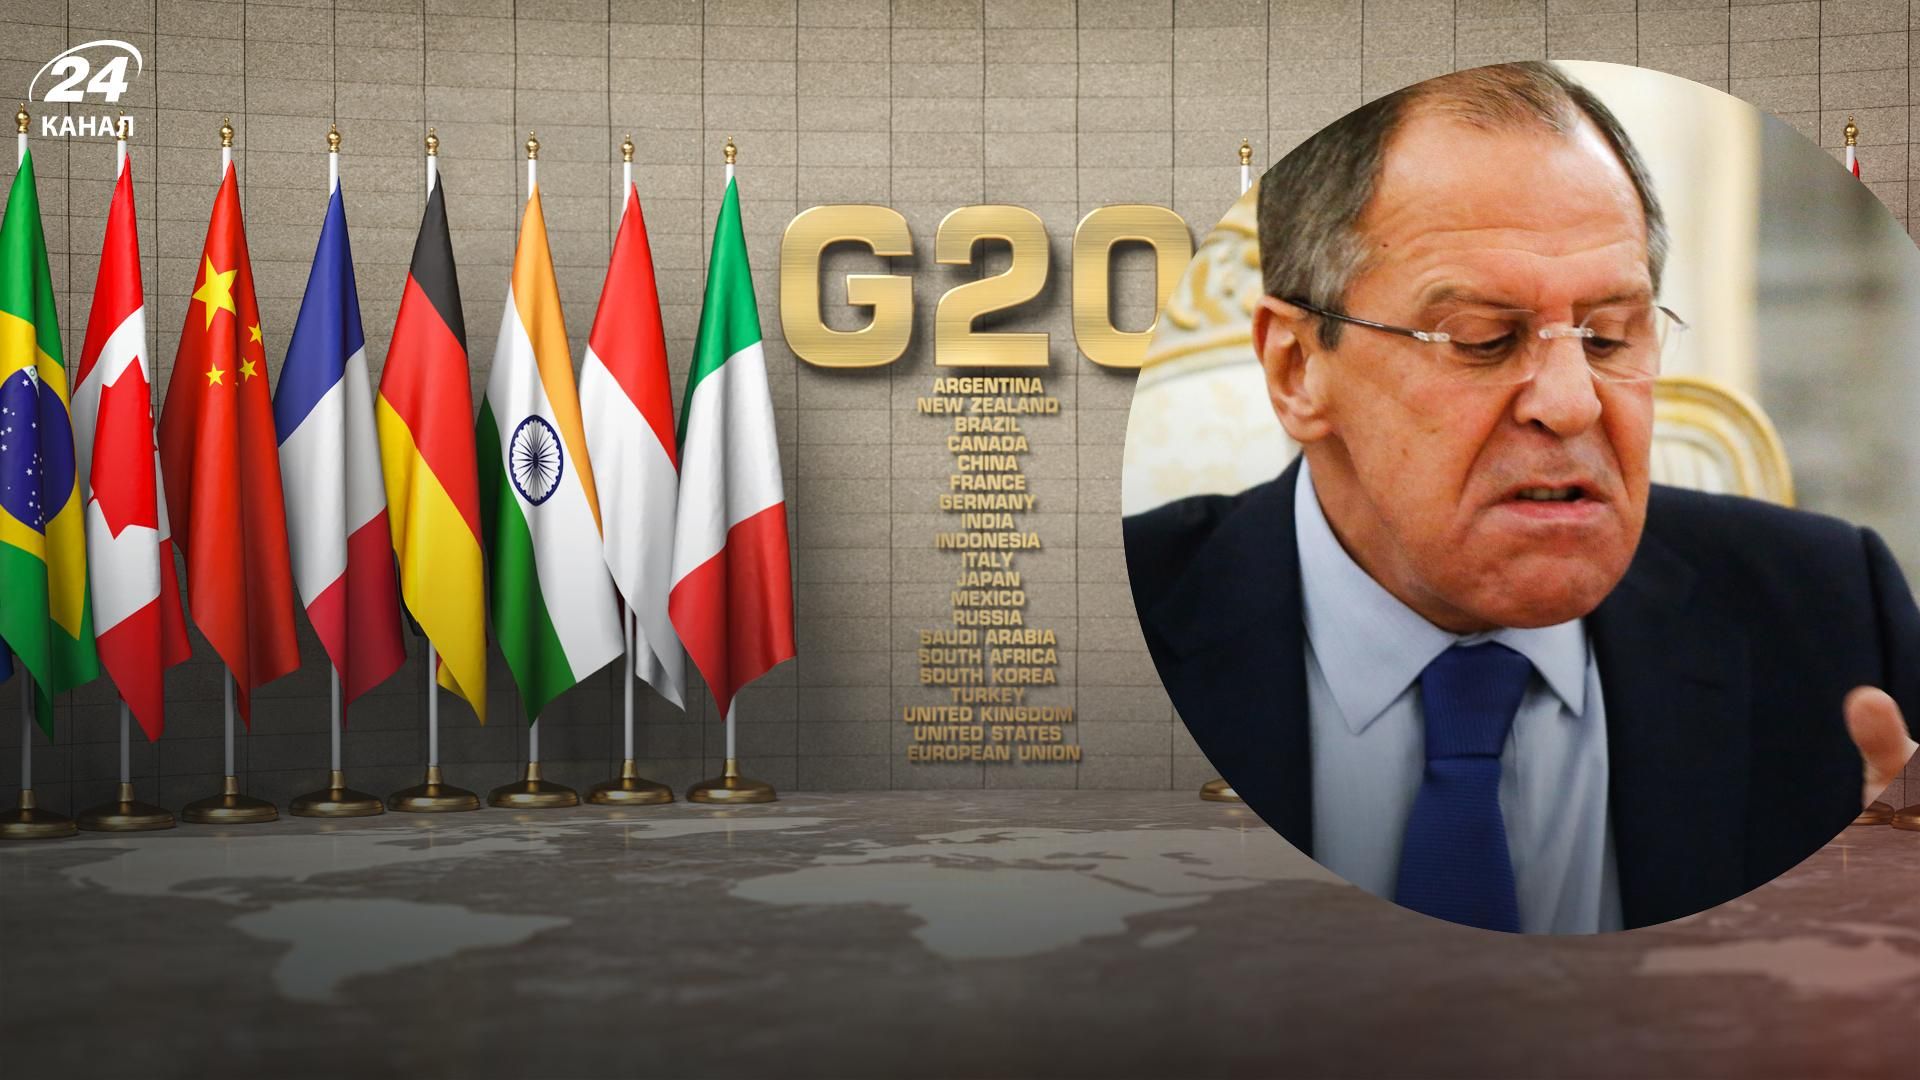 Сергій Лавров приїхав на саміт G20 - очільнику МЗС Росії влаштували бойкот інші міністри